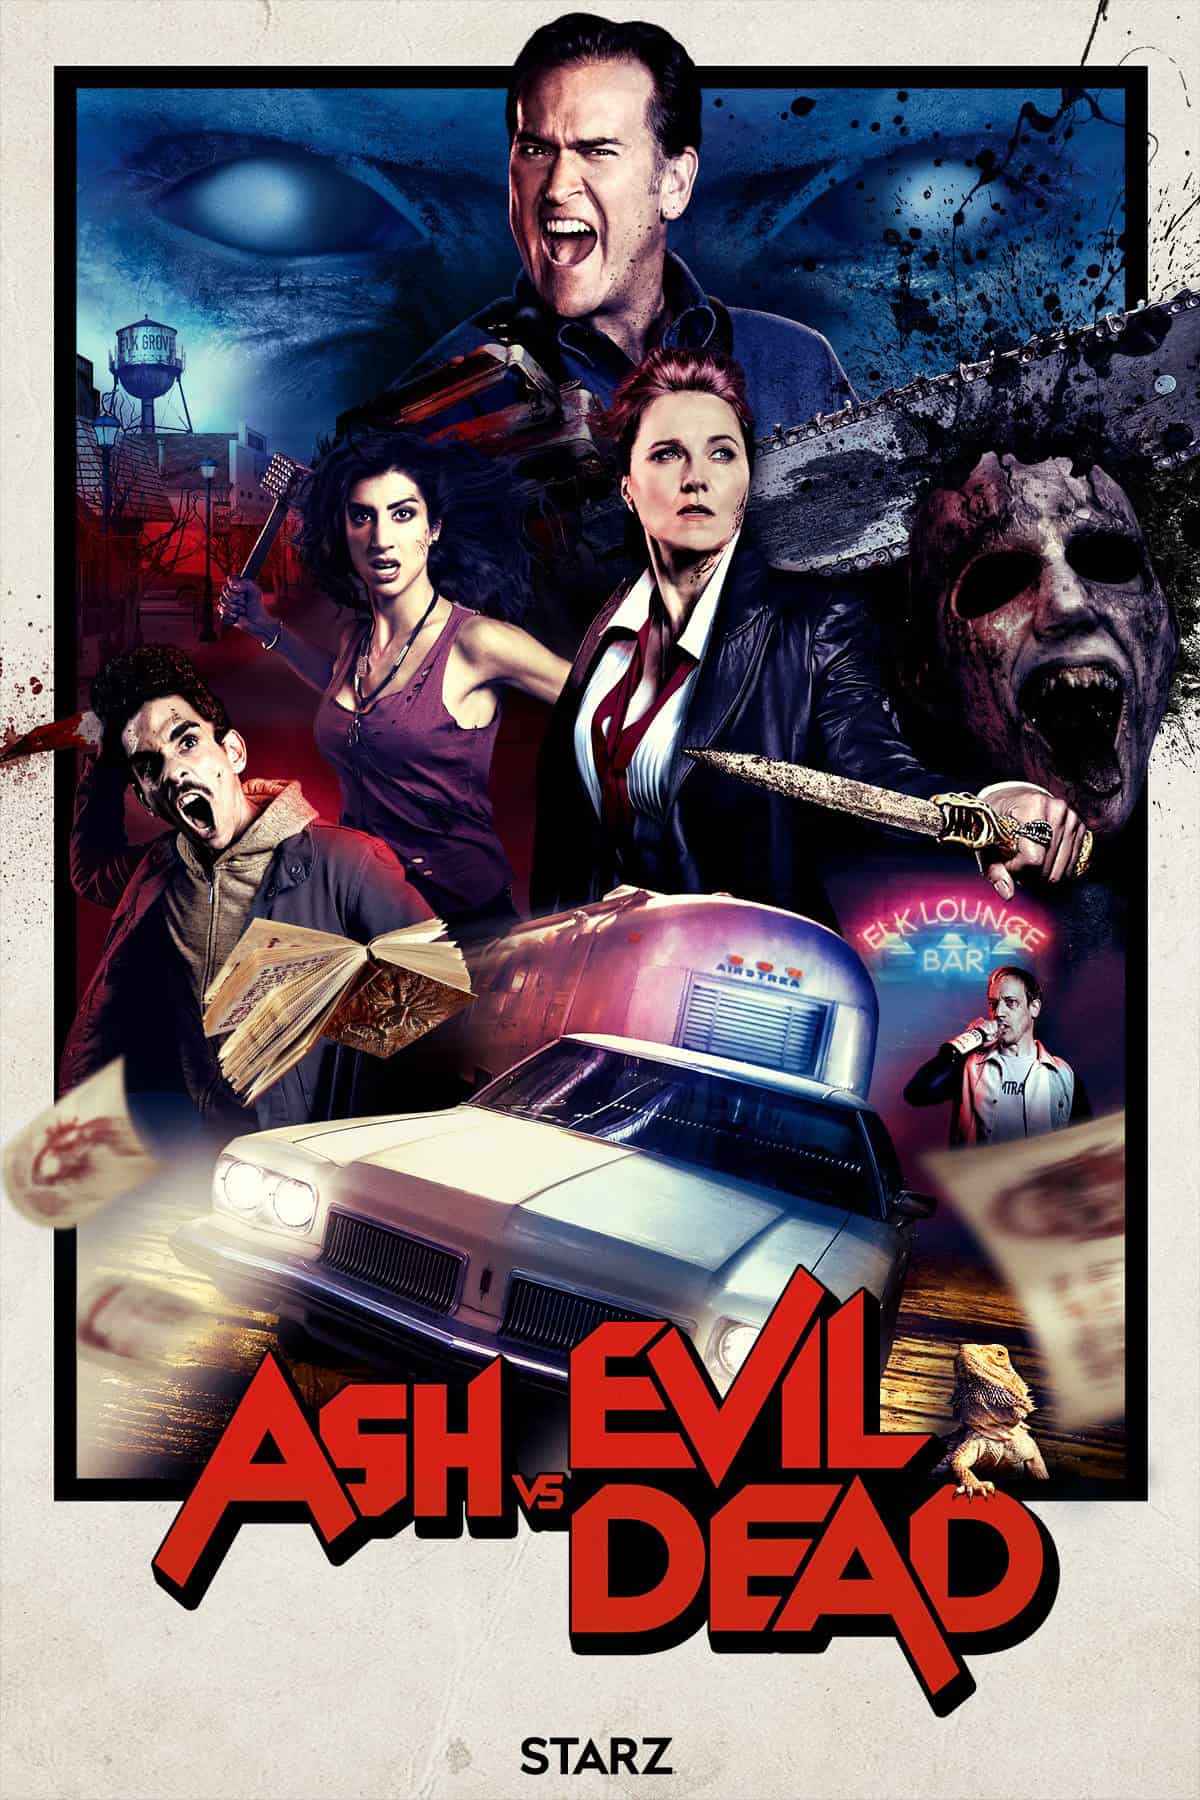 TV Series Review: Ash vs Evil Dead - Season 2 - GAMES, BRRRAAAINS & A  HEAD-BANGING LIFE